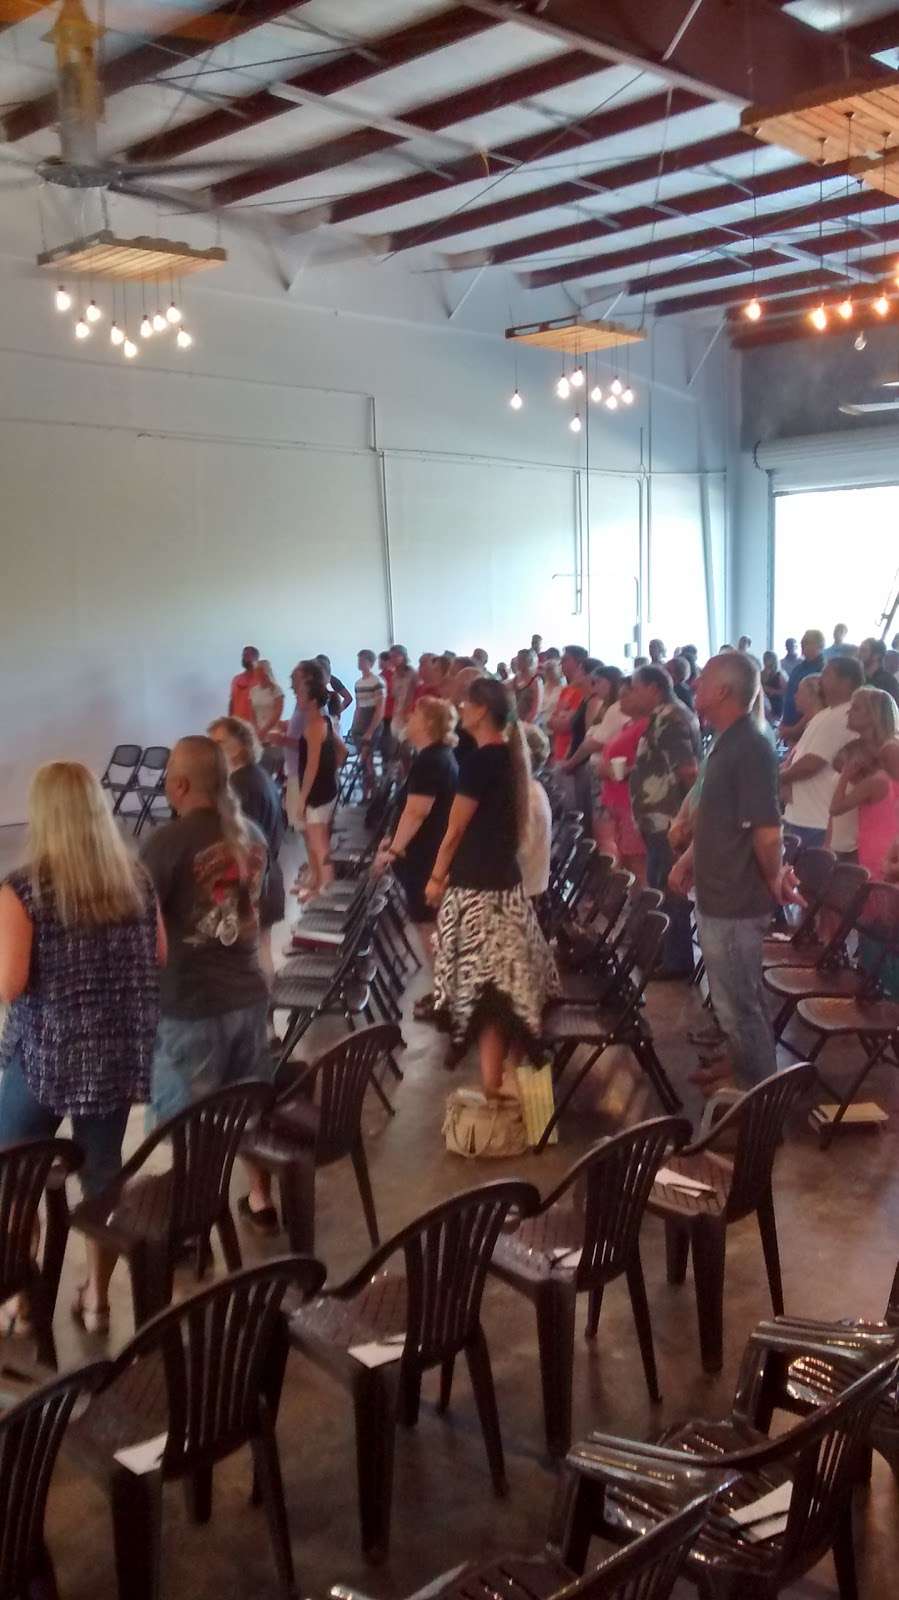 First Baptist Church Daytona Beach Worship Without Walls | Worship Without Walls, Daytona Beach, FL 32124, USA